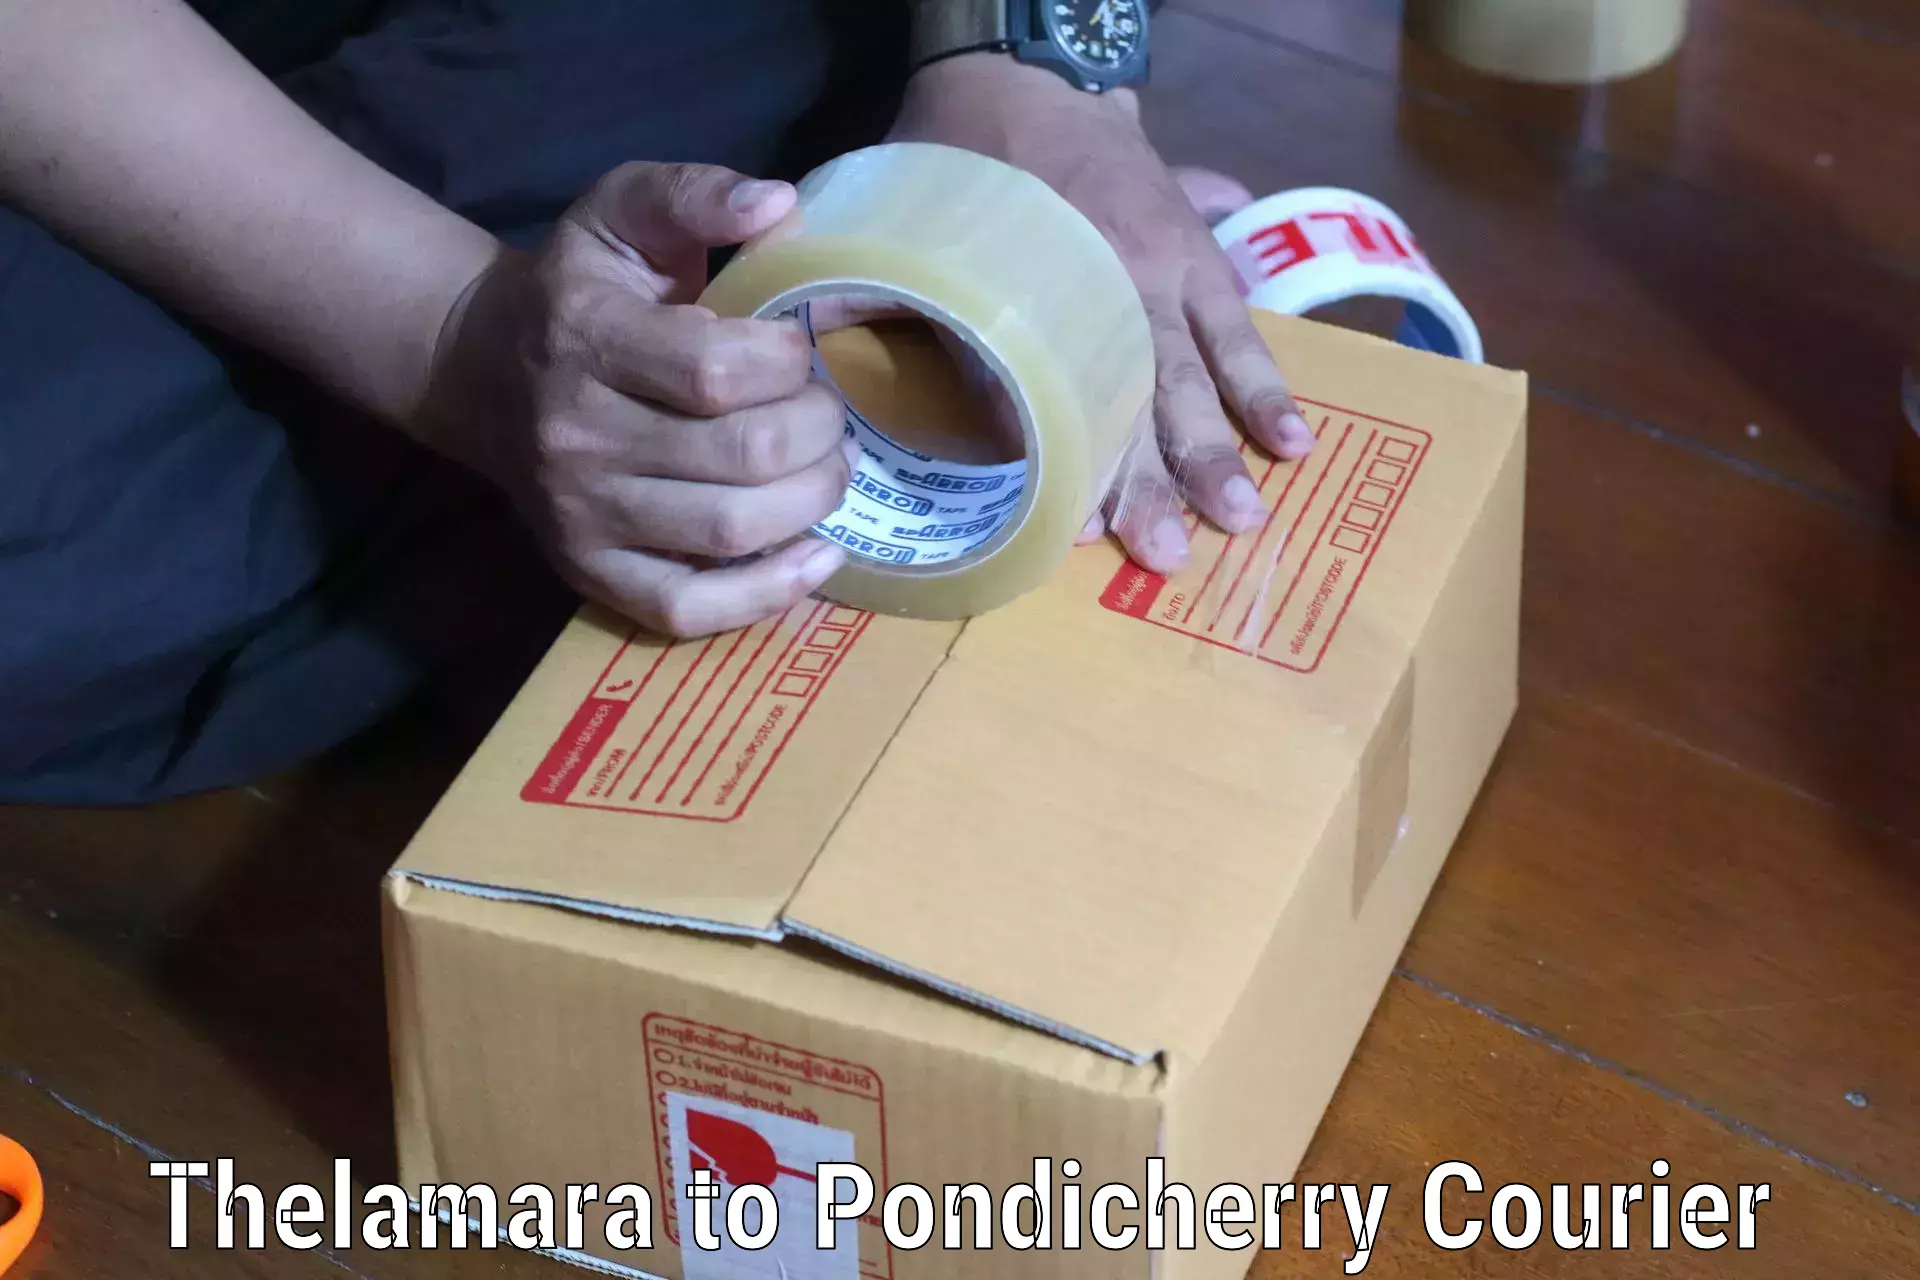 Urban courier service Thelamara to Pondicherry